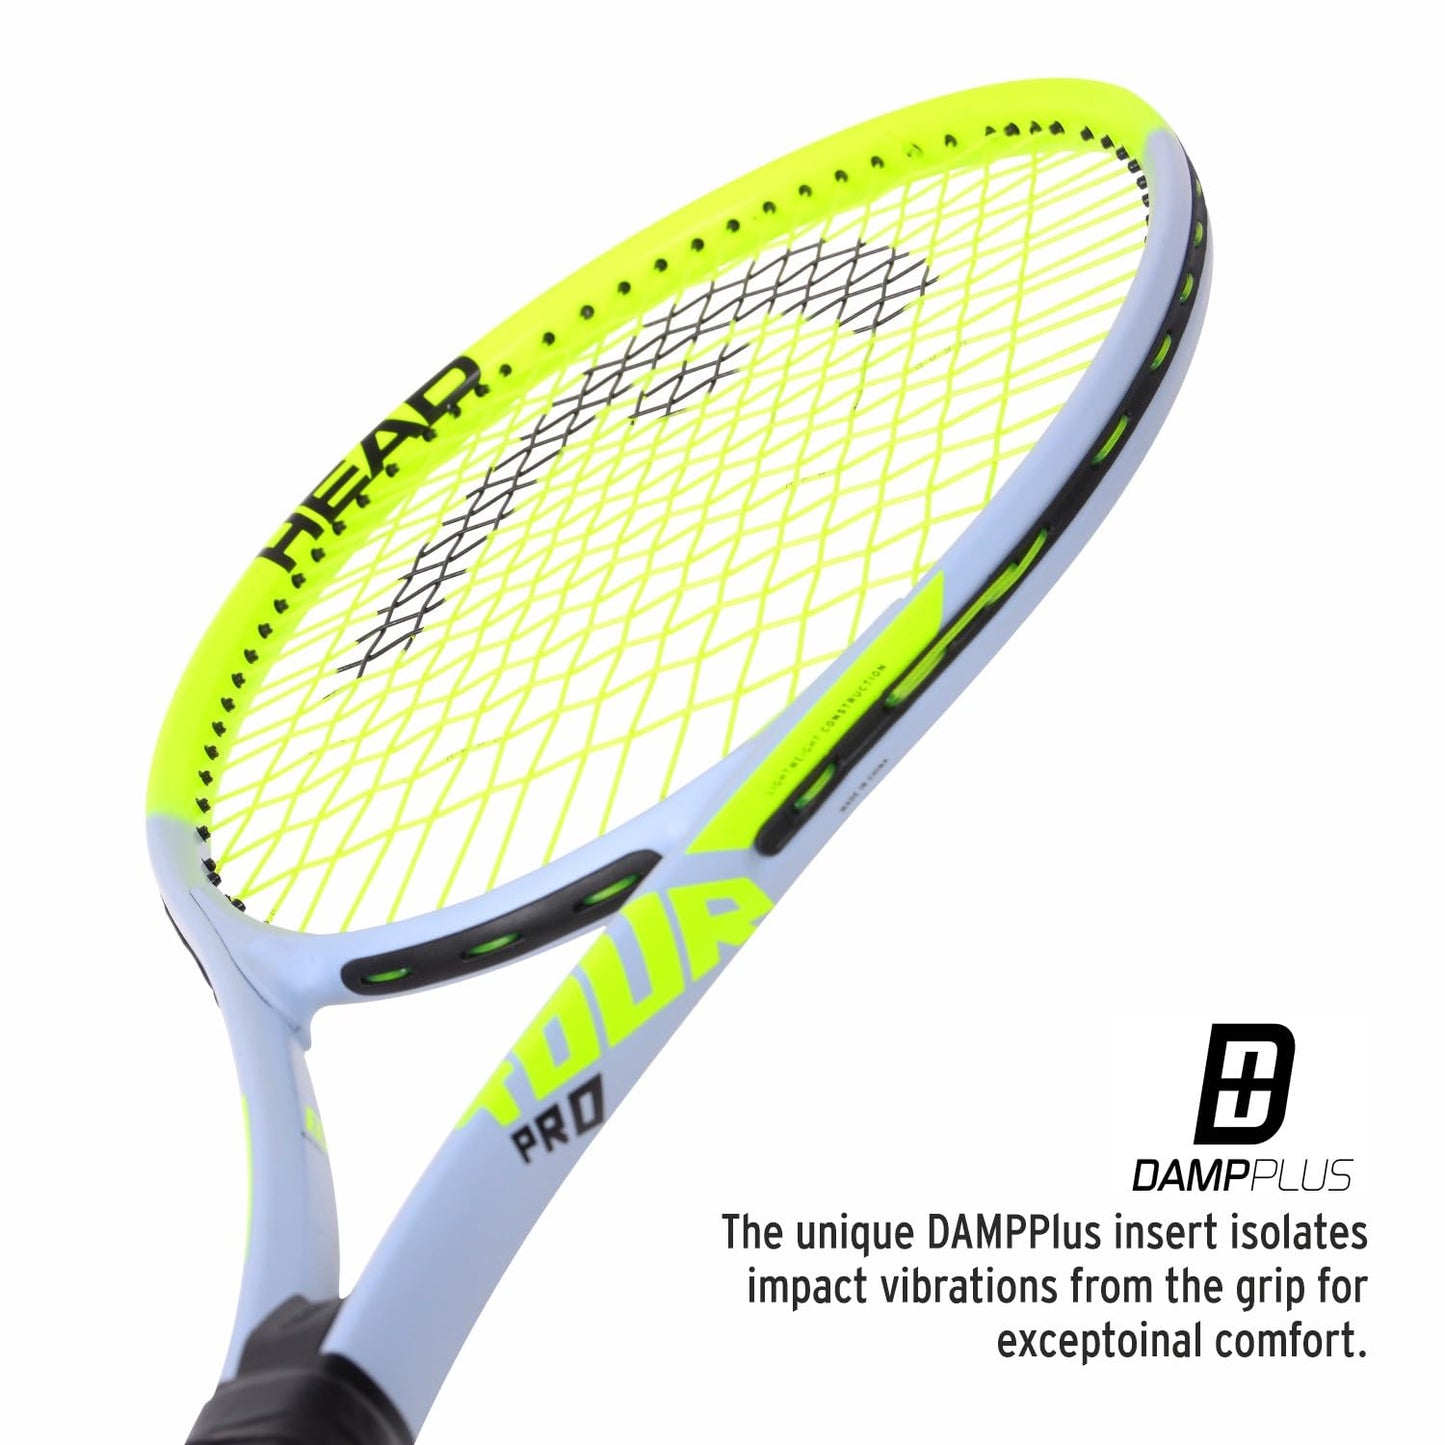 Head Tour Pro Strung Tennis Racquet - Best Price online Prokicksports.com